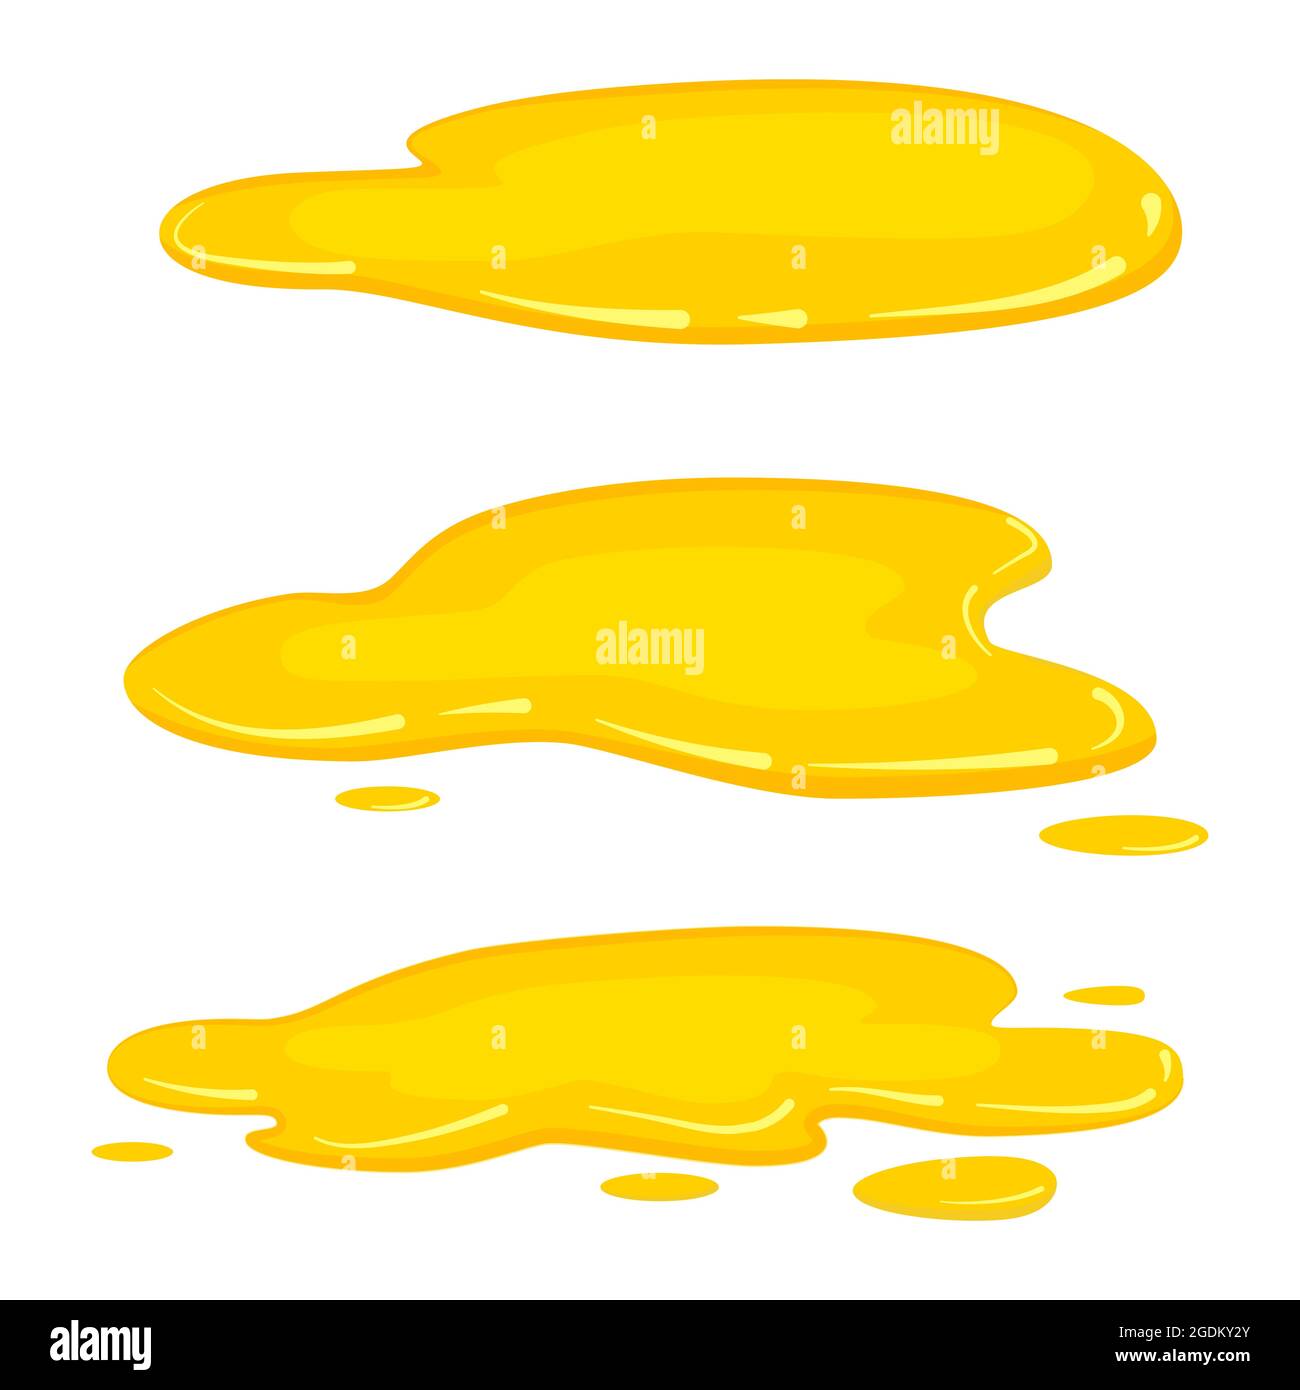 Set de flaques huile jaune, huile d'olive, miel, or liquide, vecteur, style de dessin animé, isolé, illustration, sur fond blanc Illustration de Vecteur